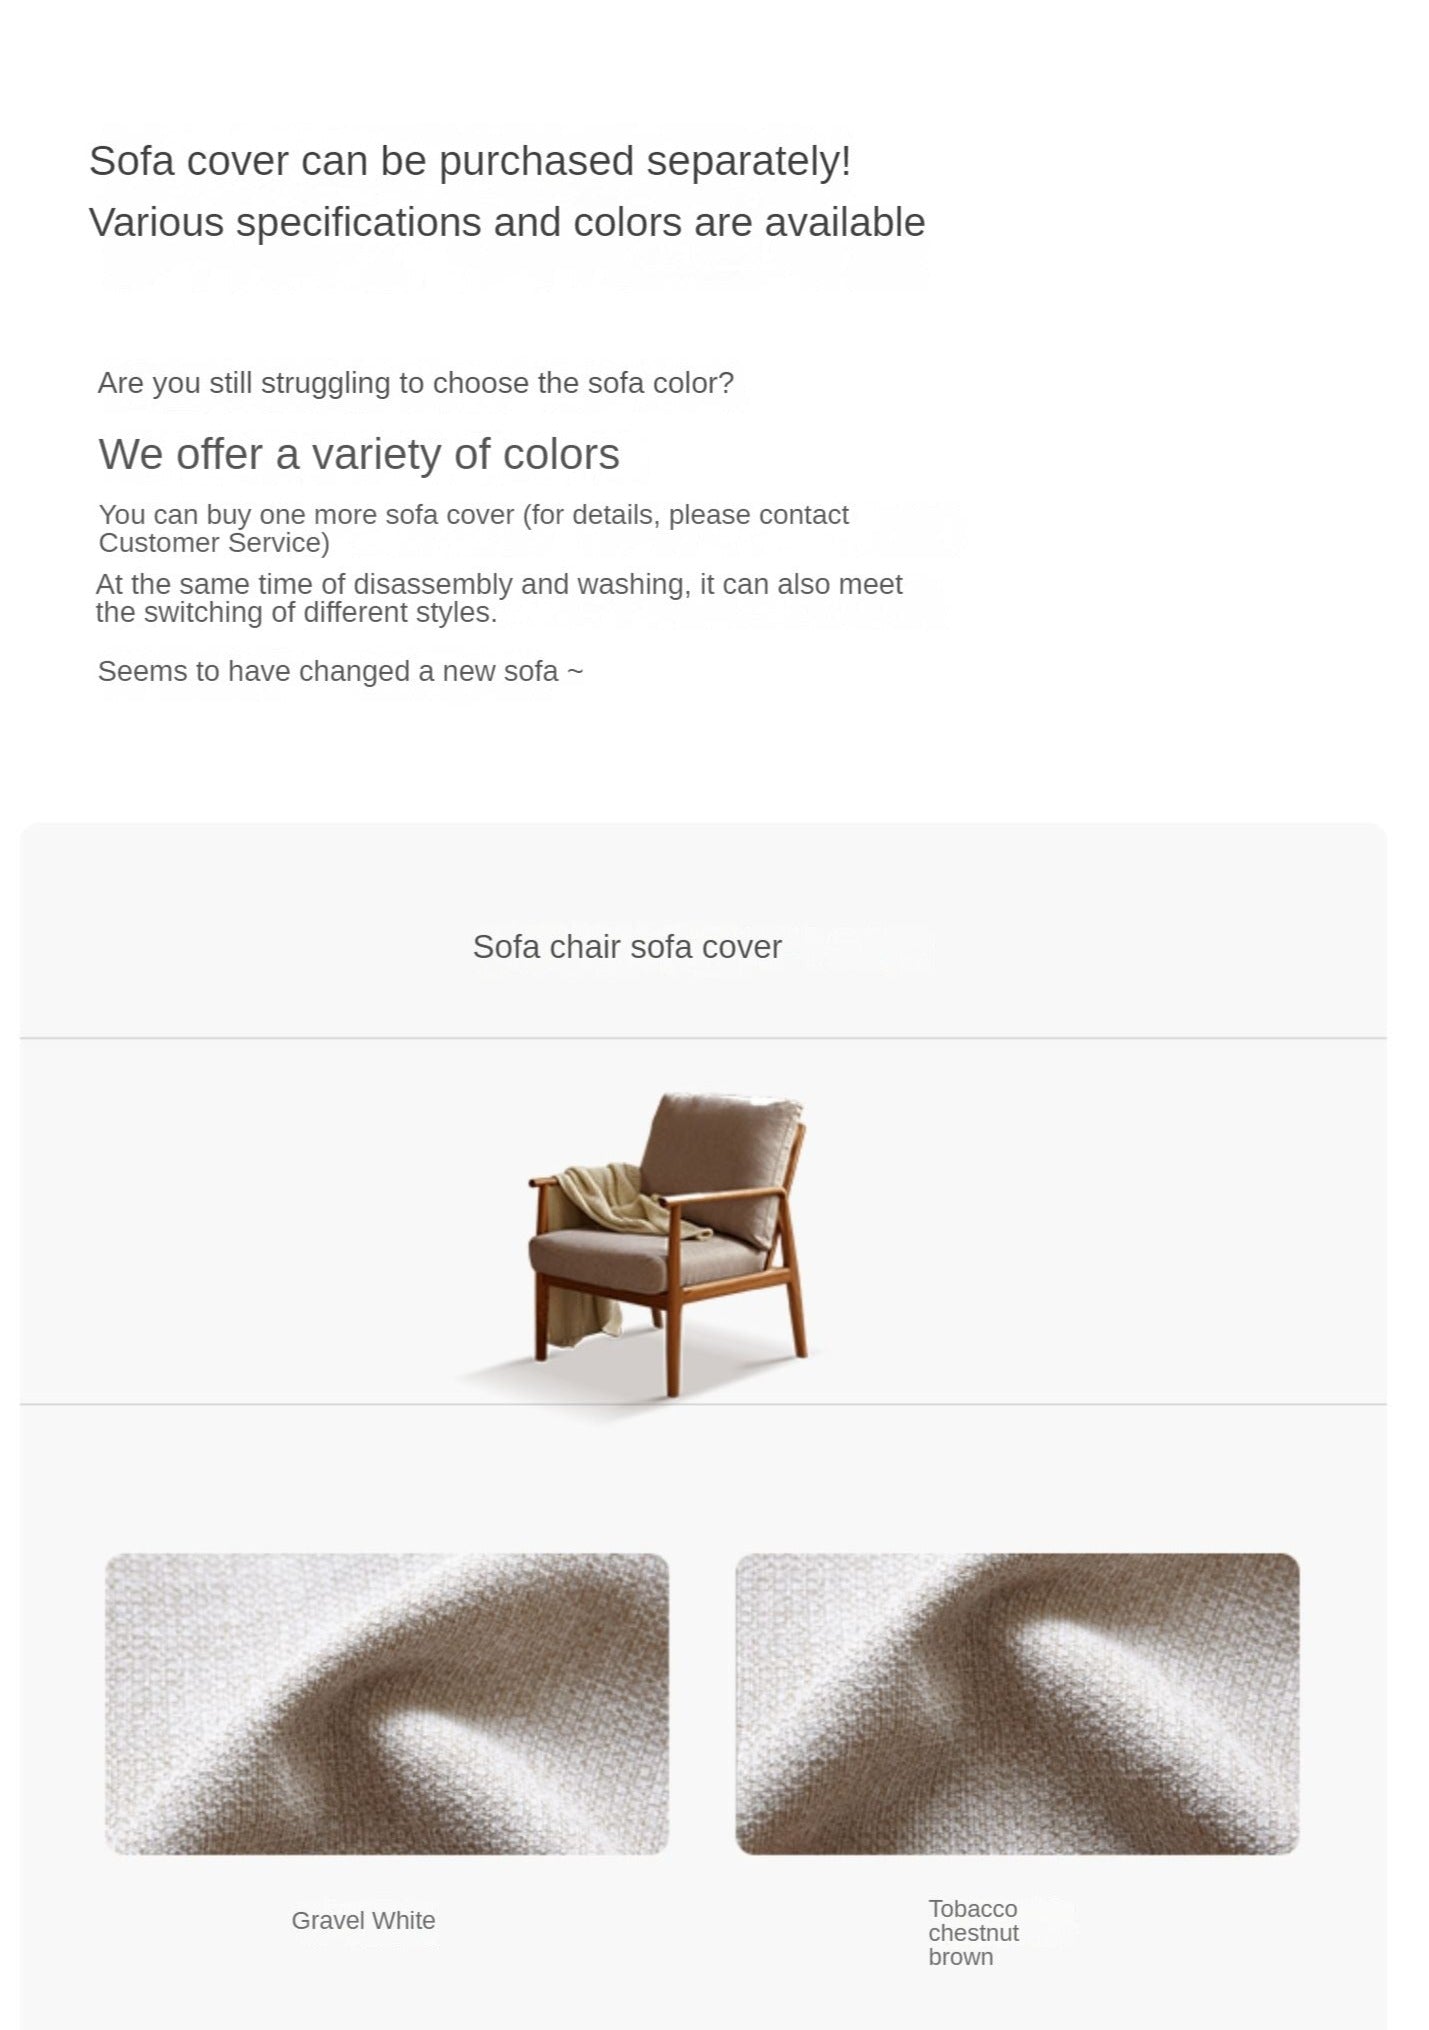 Leisure armchair & footstool Black Walnut solid wood-